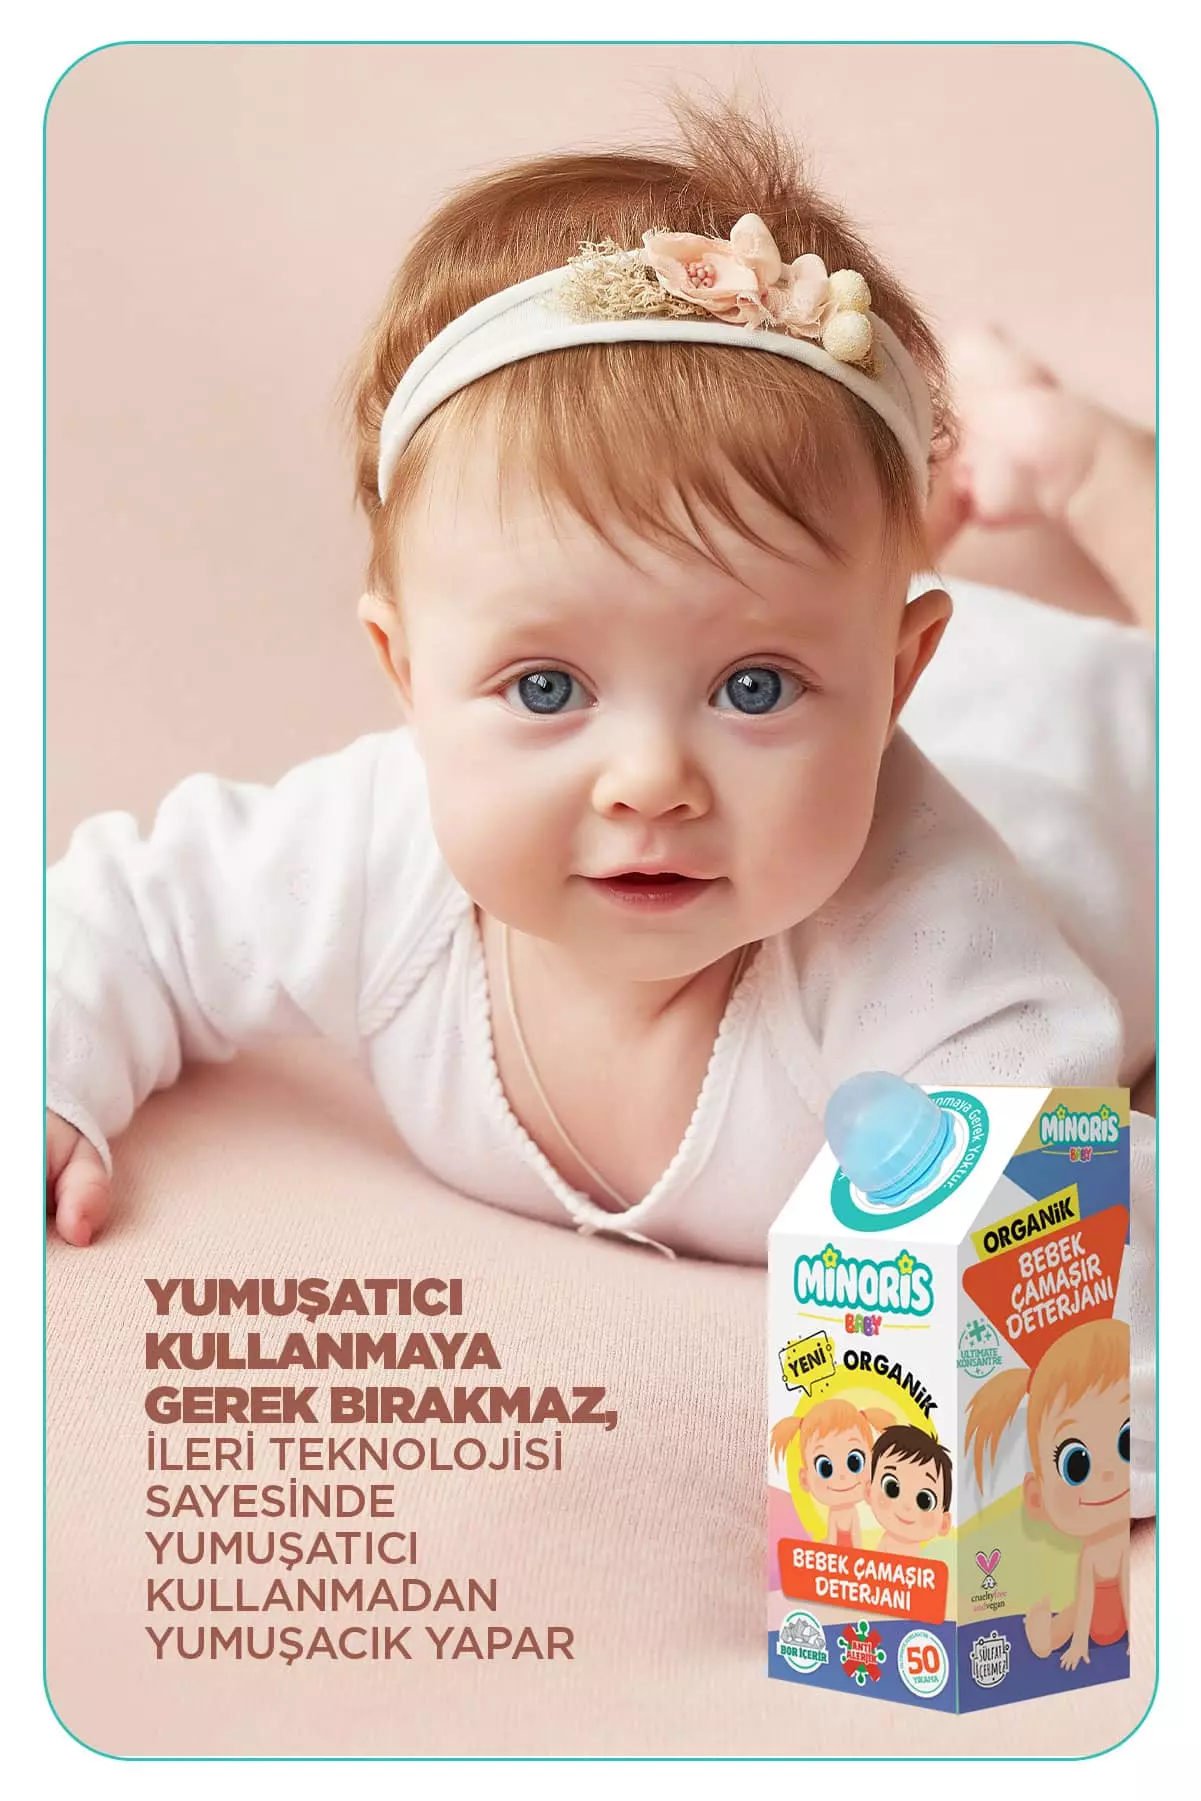 Minoris Baby Organik Antialerjik Bebek Çamaşır Deterjanı 1 LT